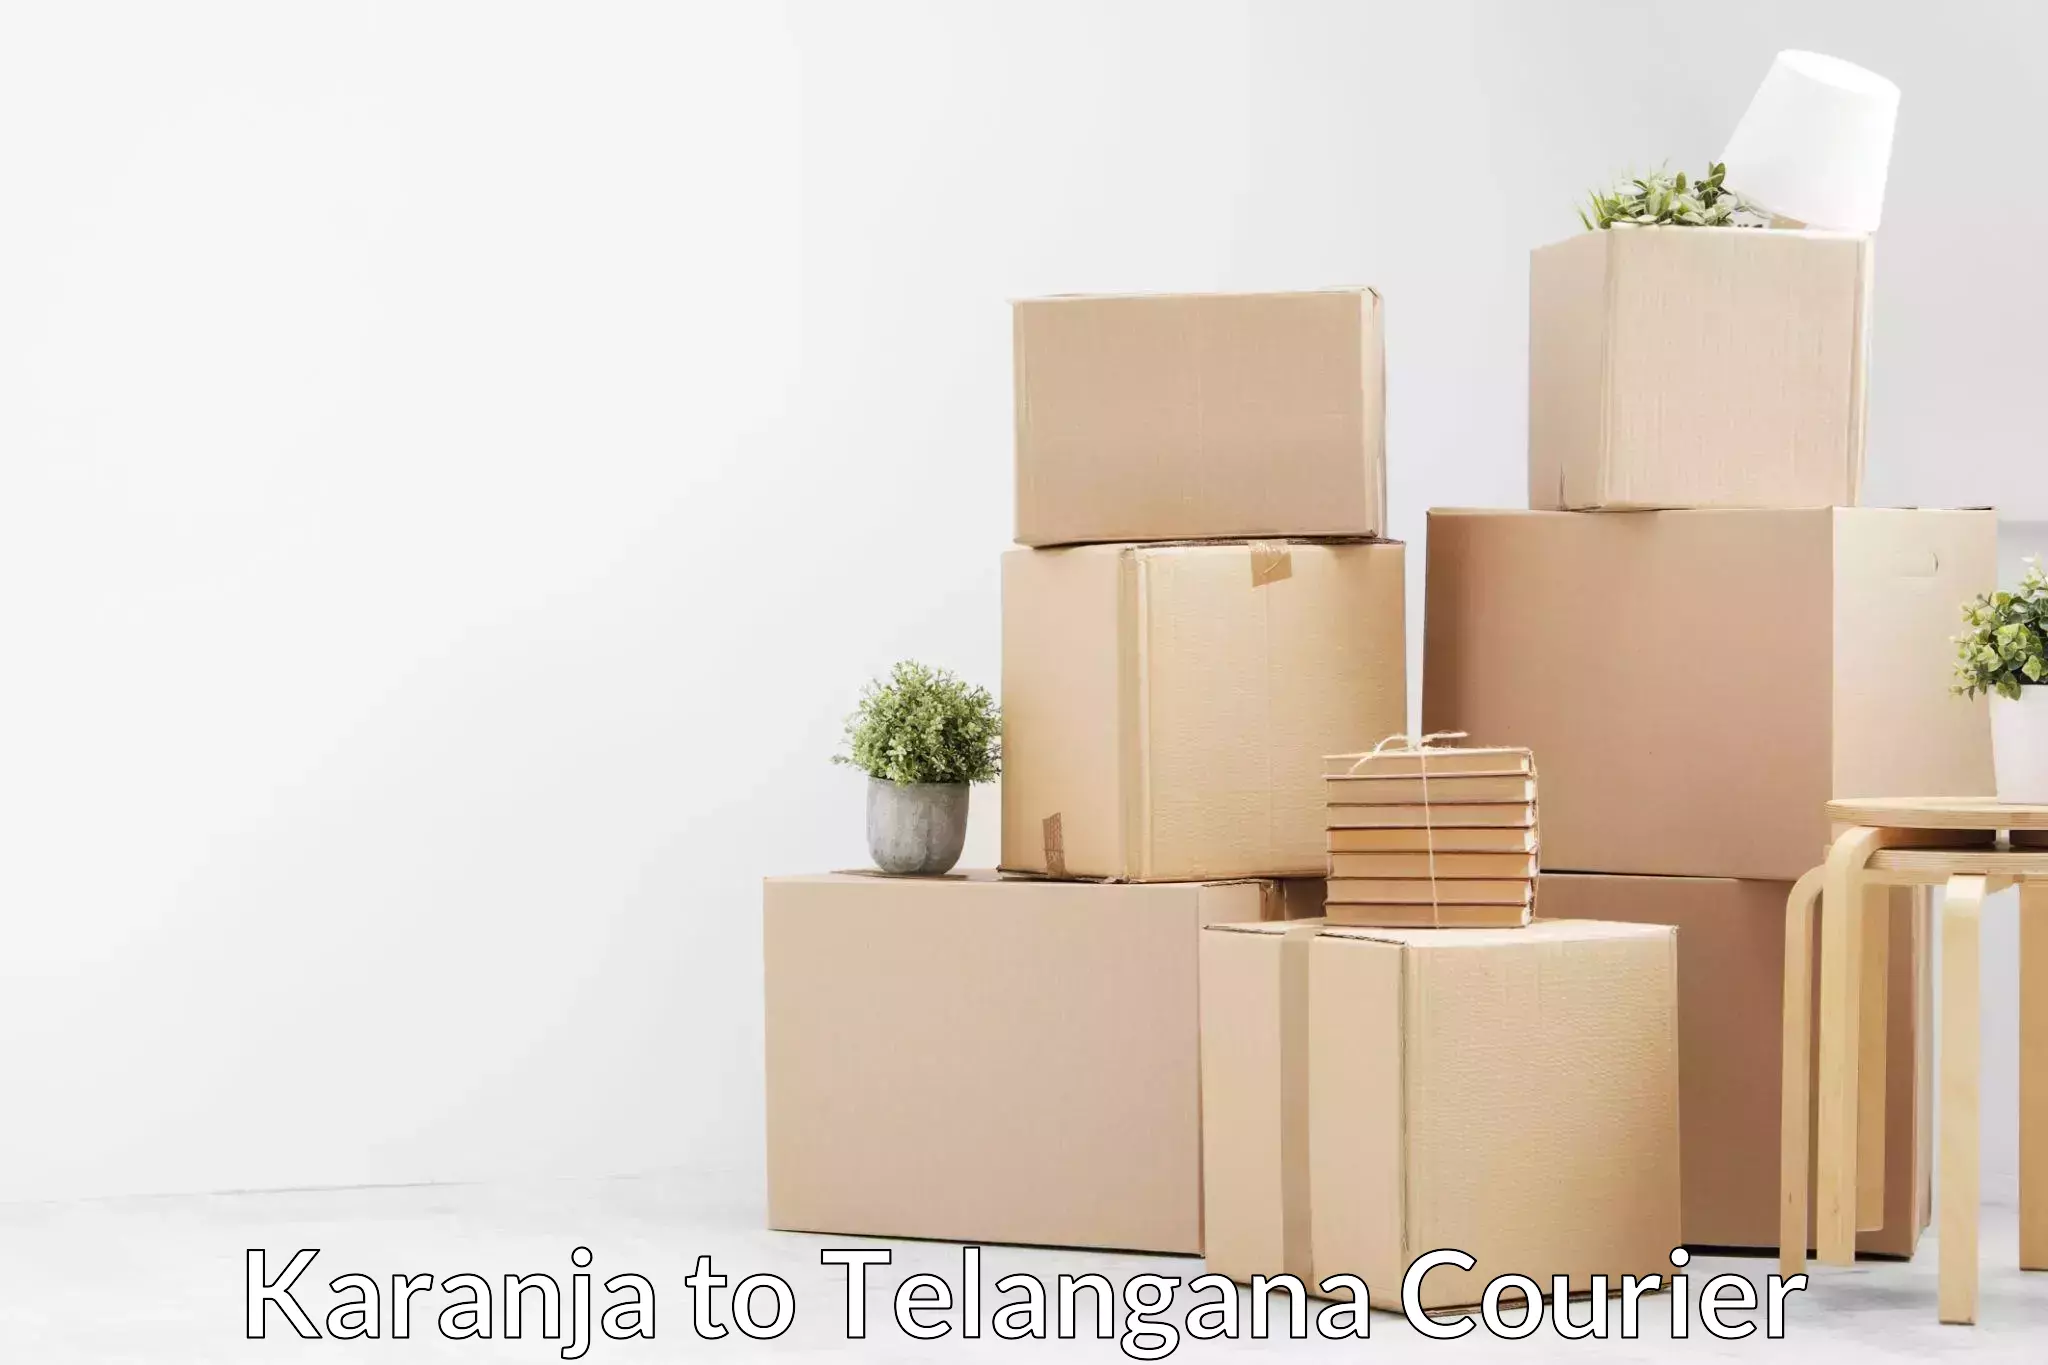 Professional packing services in Karanja to Telangana